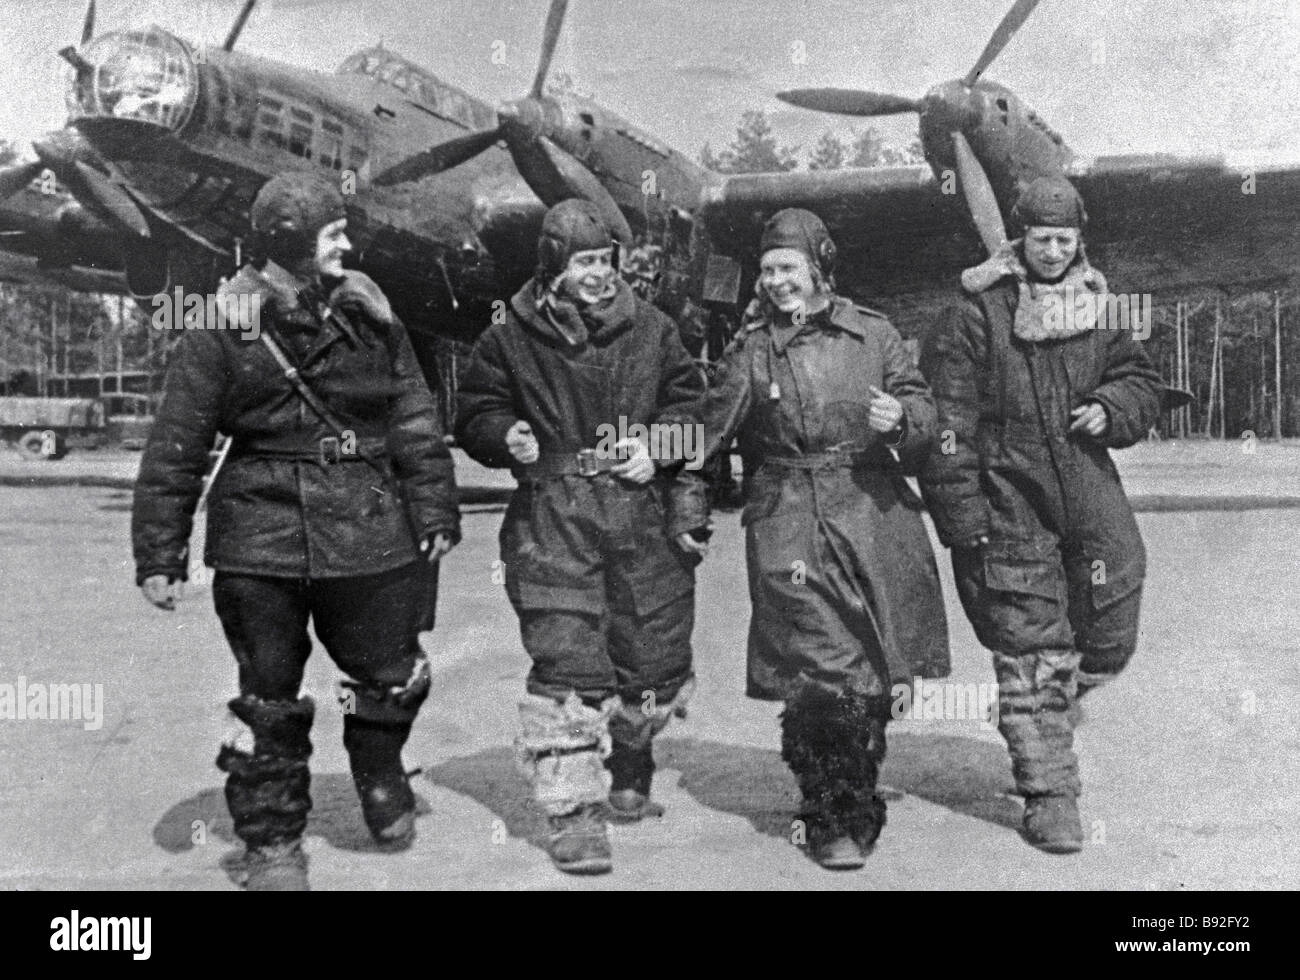 Reproduktion Der Ein Foto Von Der Crew Der Schwere Bomber Petljakow Pe 8 Vom Dorf Monino Luftwaffenmuseum Stockfotografie Alamy